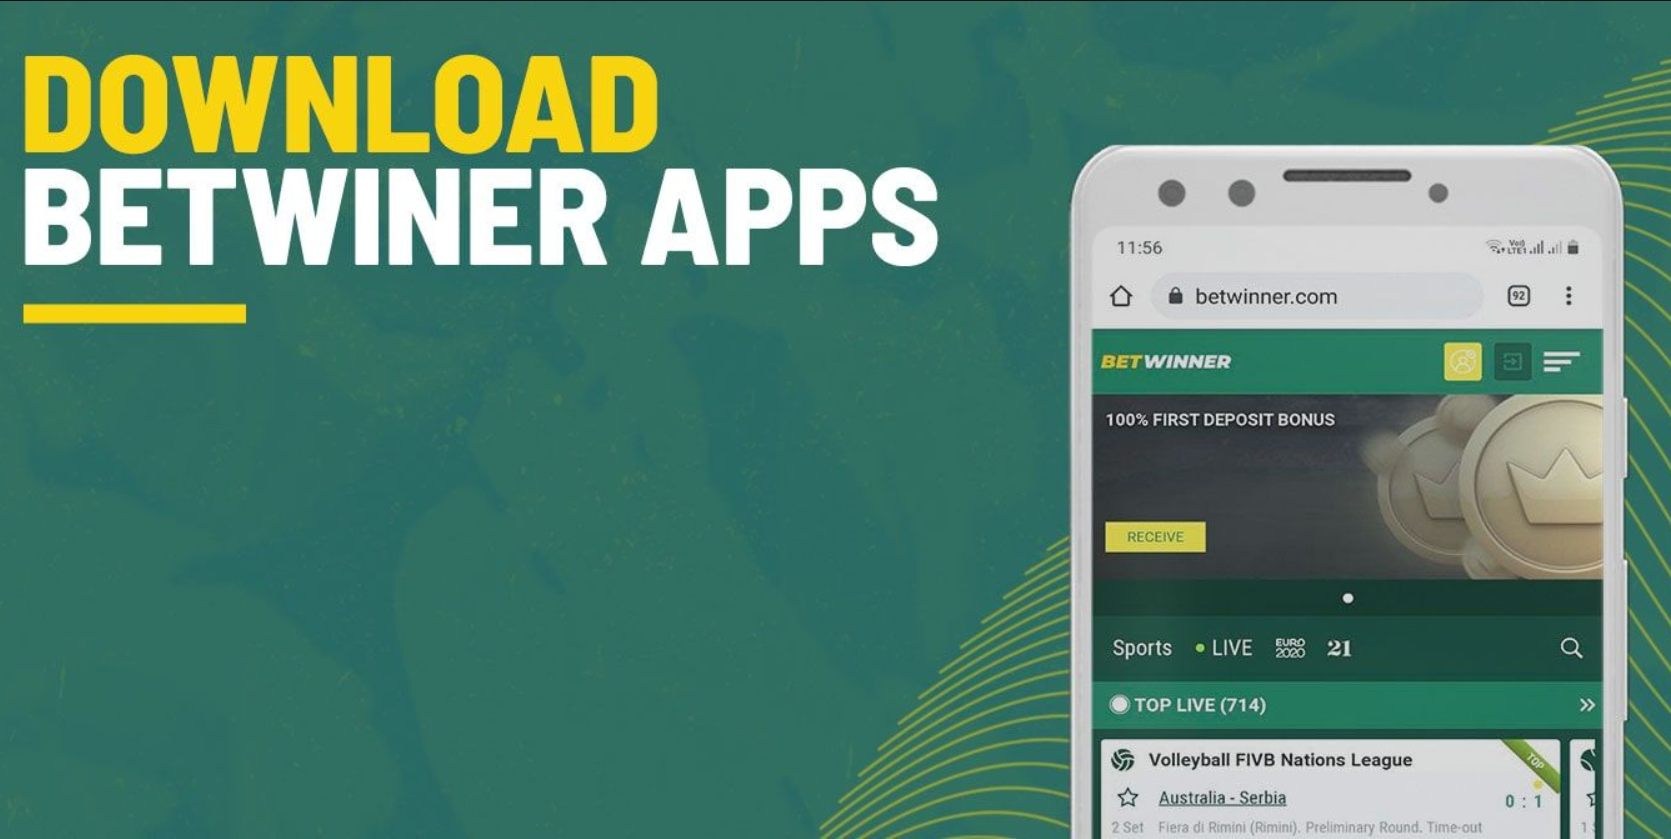 Download Betwinner apps